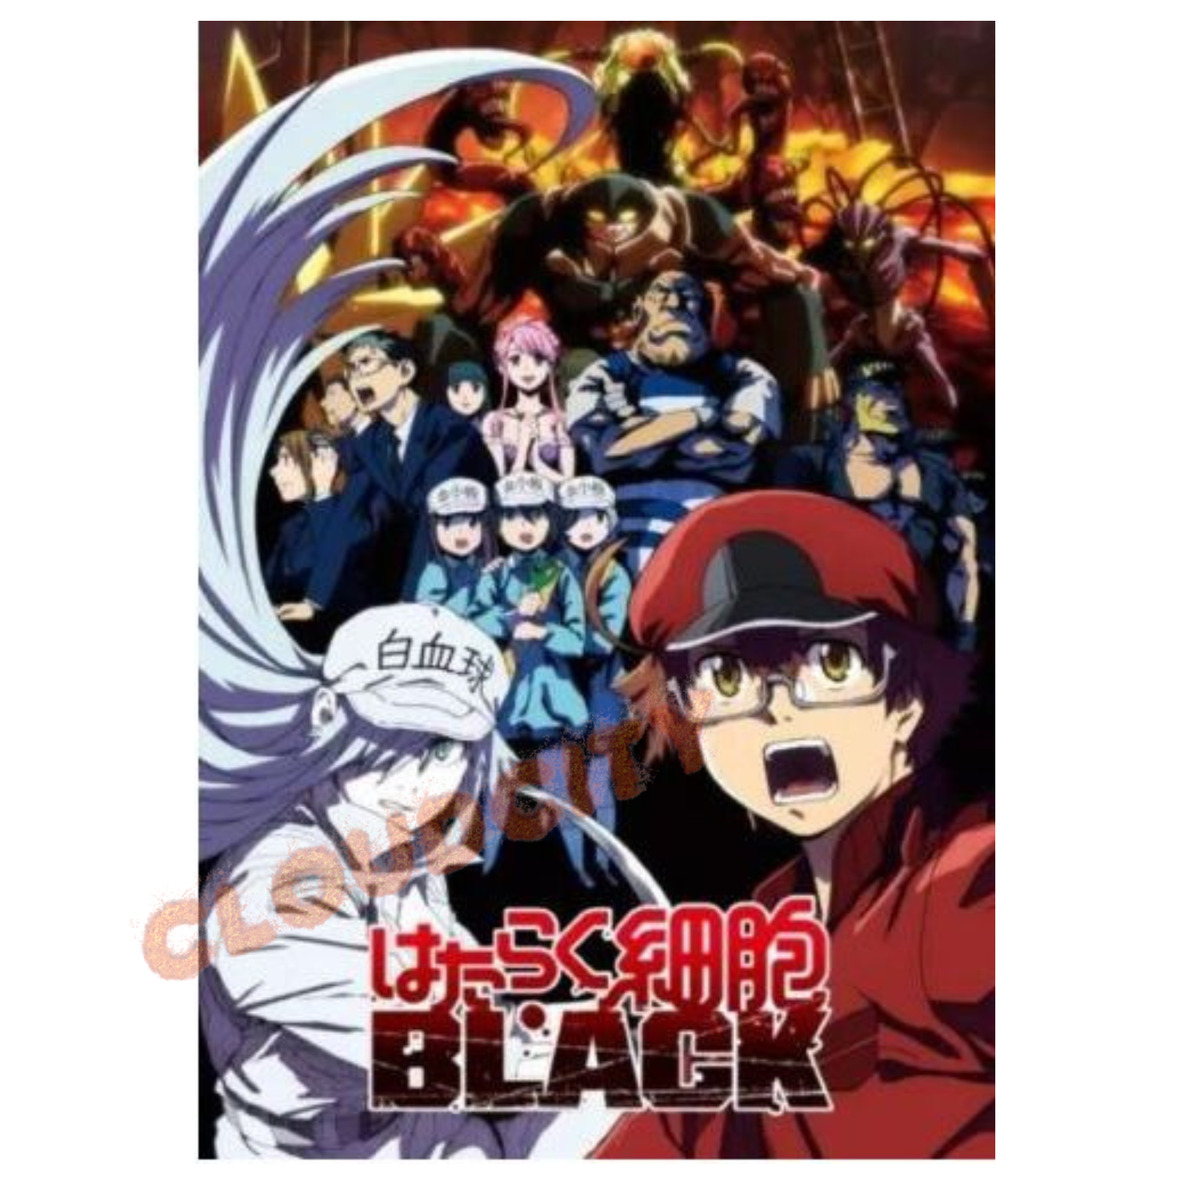 Animes In Japan 🎄 on X: INFO Capa do Blu-ray/DVD do evento especial da  colaboração entre Hataraku Saibou (Cells at Work!) e Hataraku Saibou  Black (Cells at Work! CODE BLACK!). 📌 Lançamento